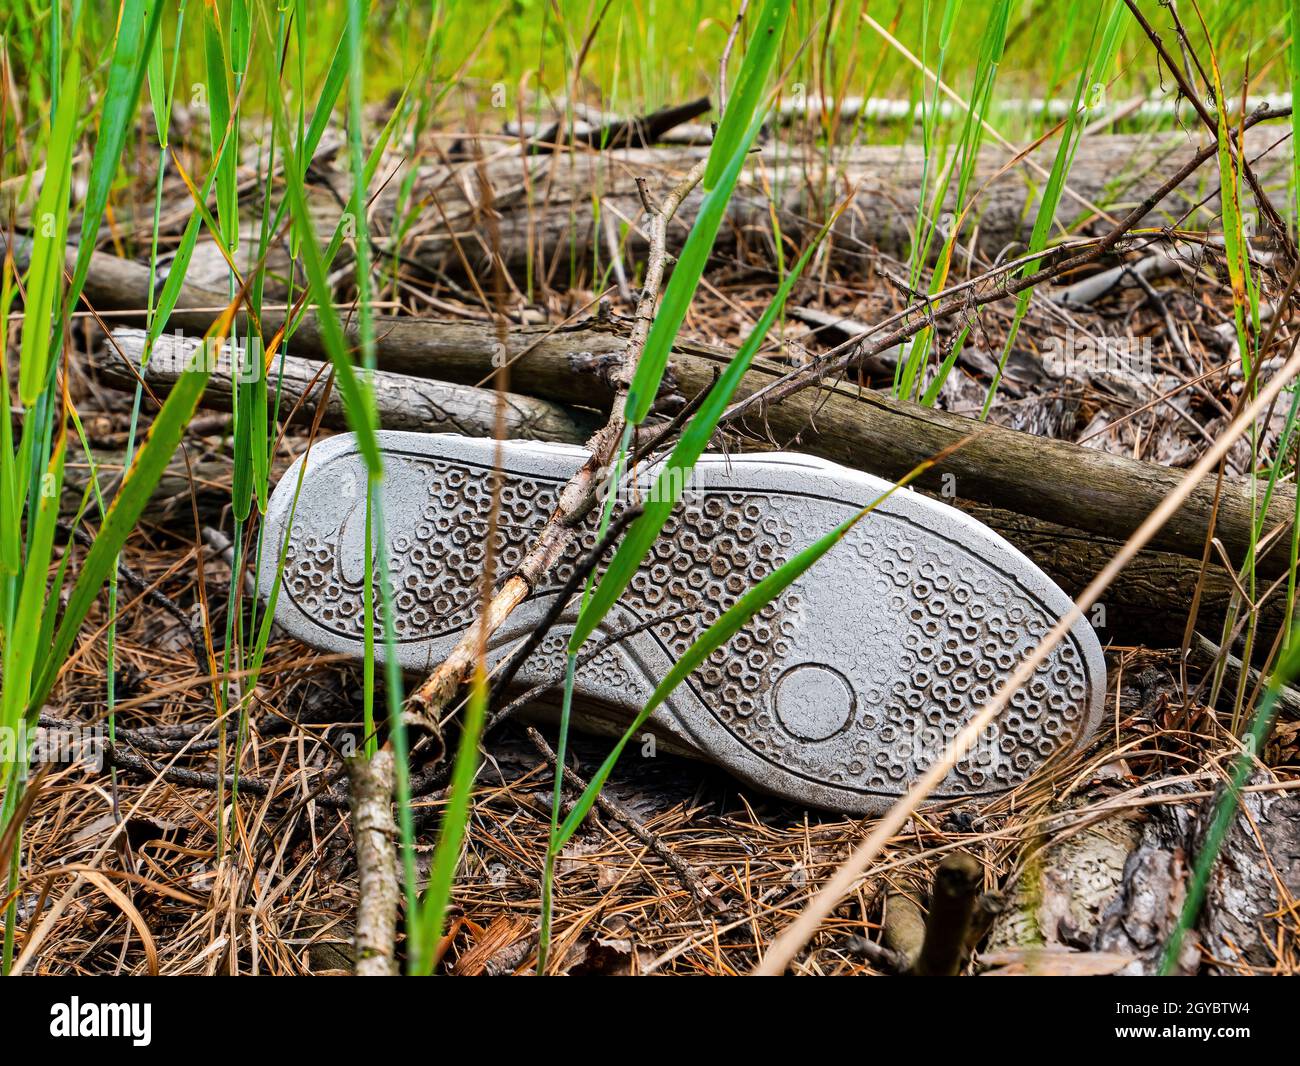 Les semelles en caoutchouc des chaussures de sport jetées dans la forêt. Semelle de chaussure. Matériau en caoutchouc herbe verte. Aiguilles de pin. Protection de l'environnement. Écologie Banque D'Images